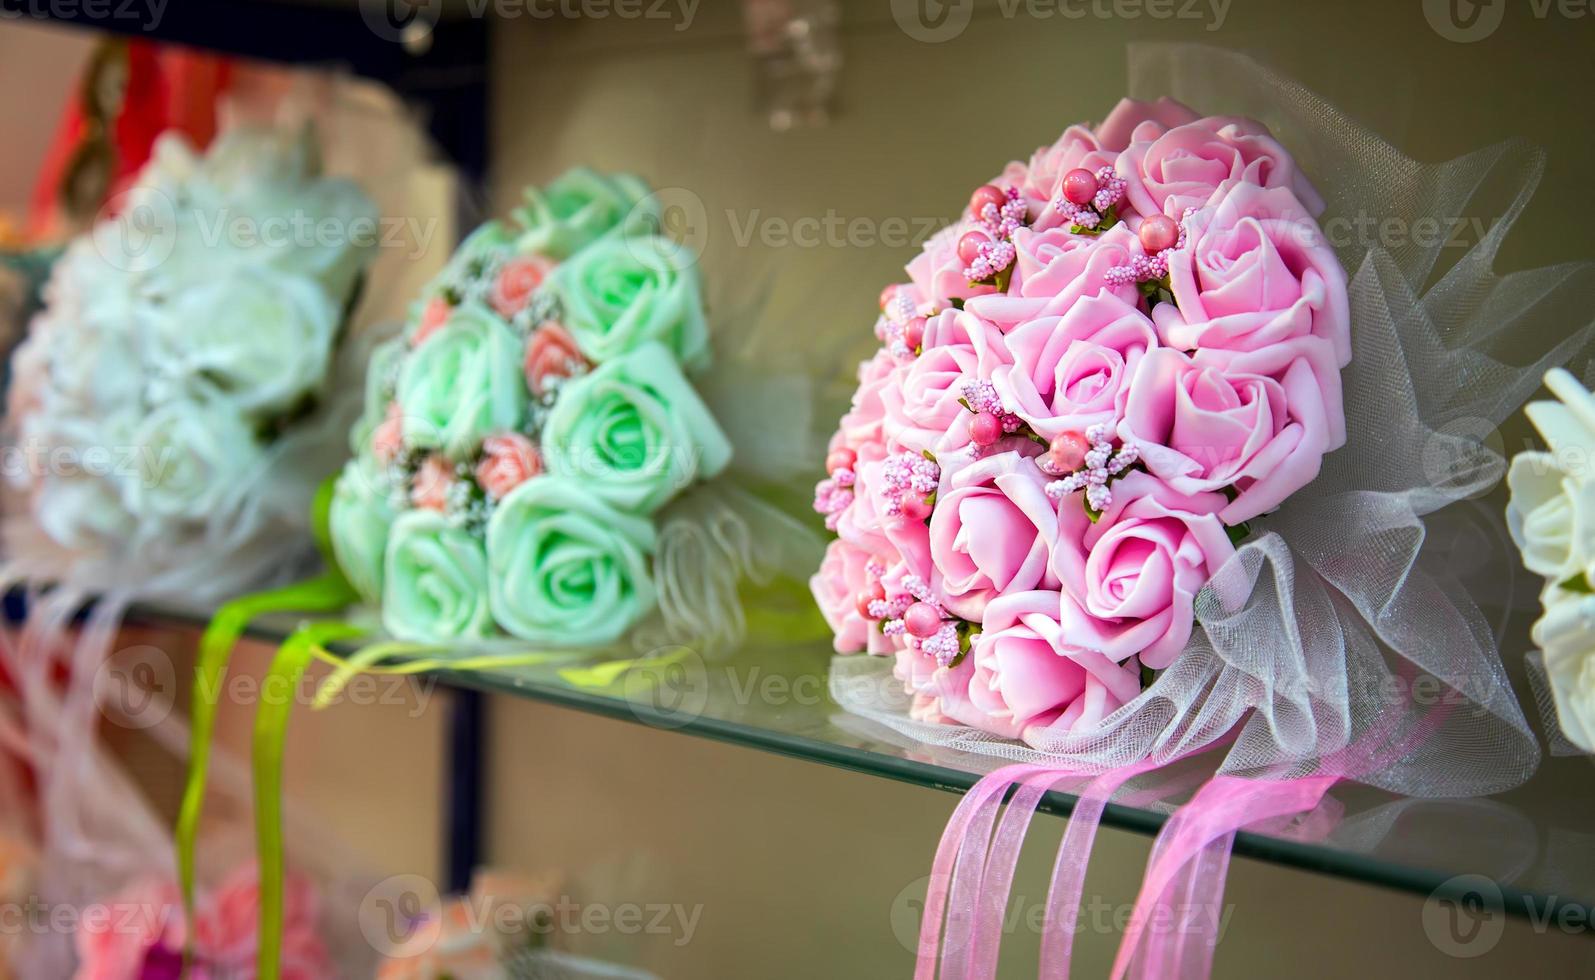 bunter Hochzeitsstrauß schöne romantische Blumen foto